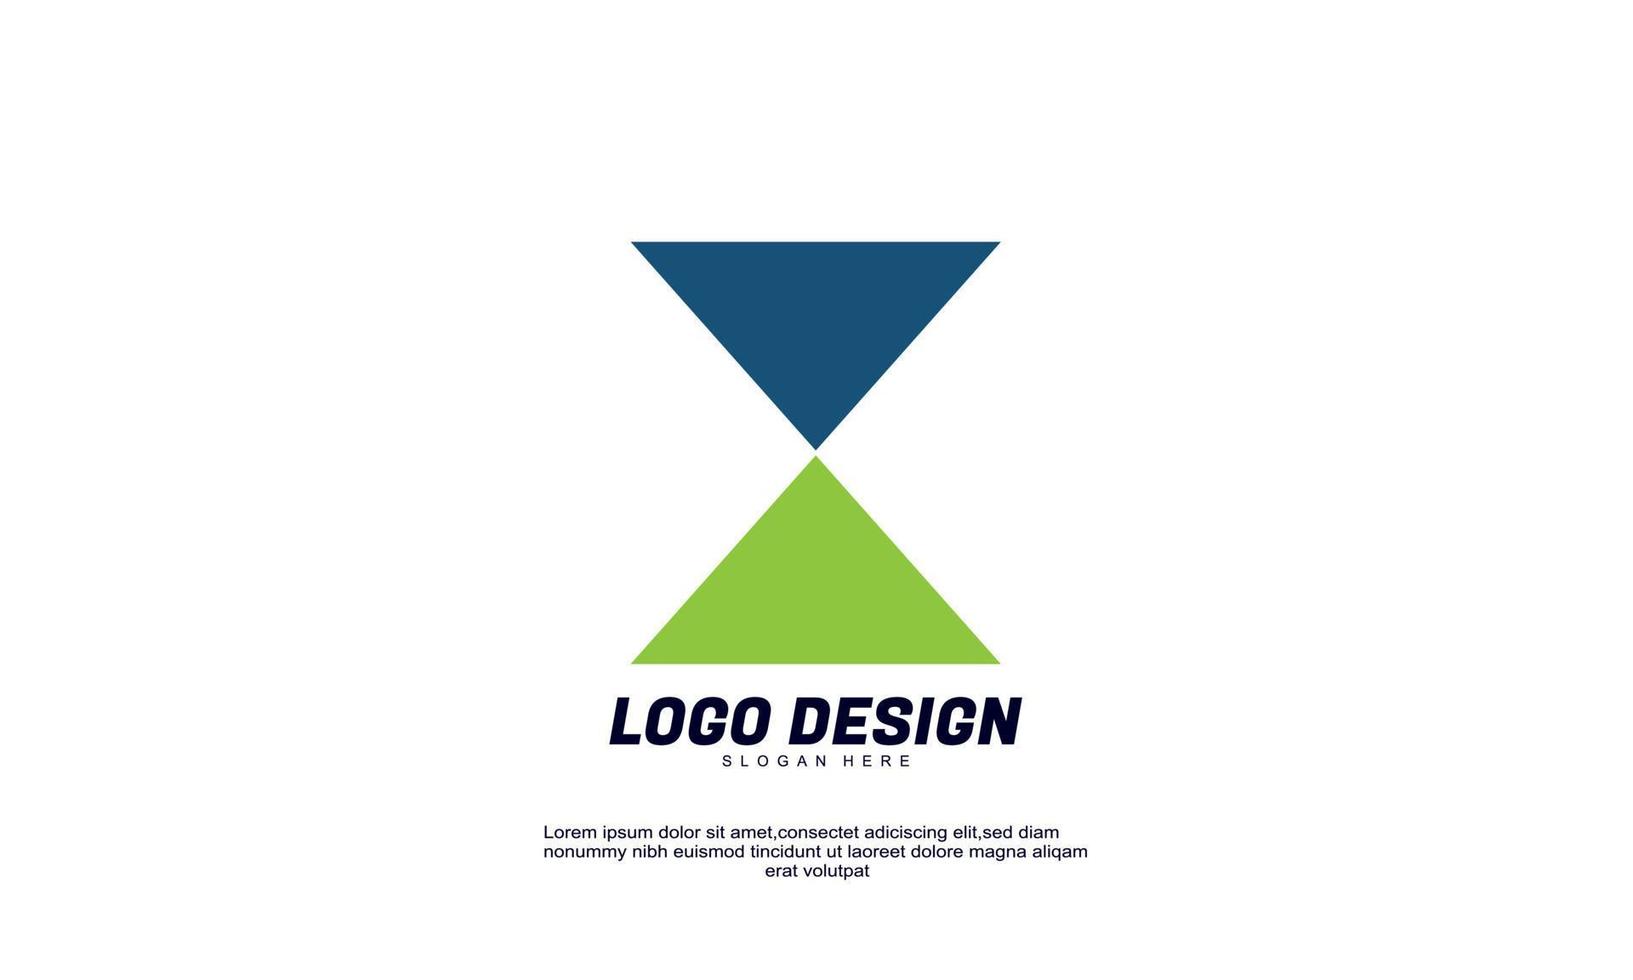 Lager abstrakte kreative Wirtschaft Finanzen Unternehmen Produktivität Idee Markenidentität Logo-Design-Vorlage vektor